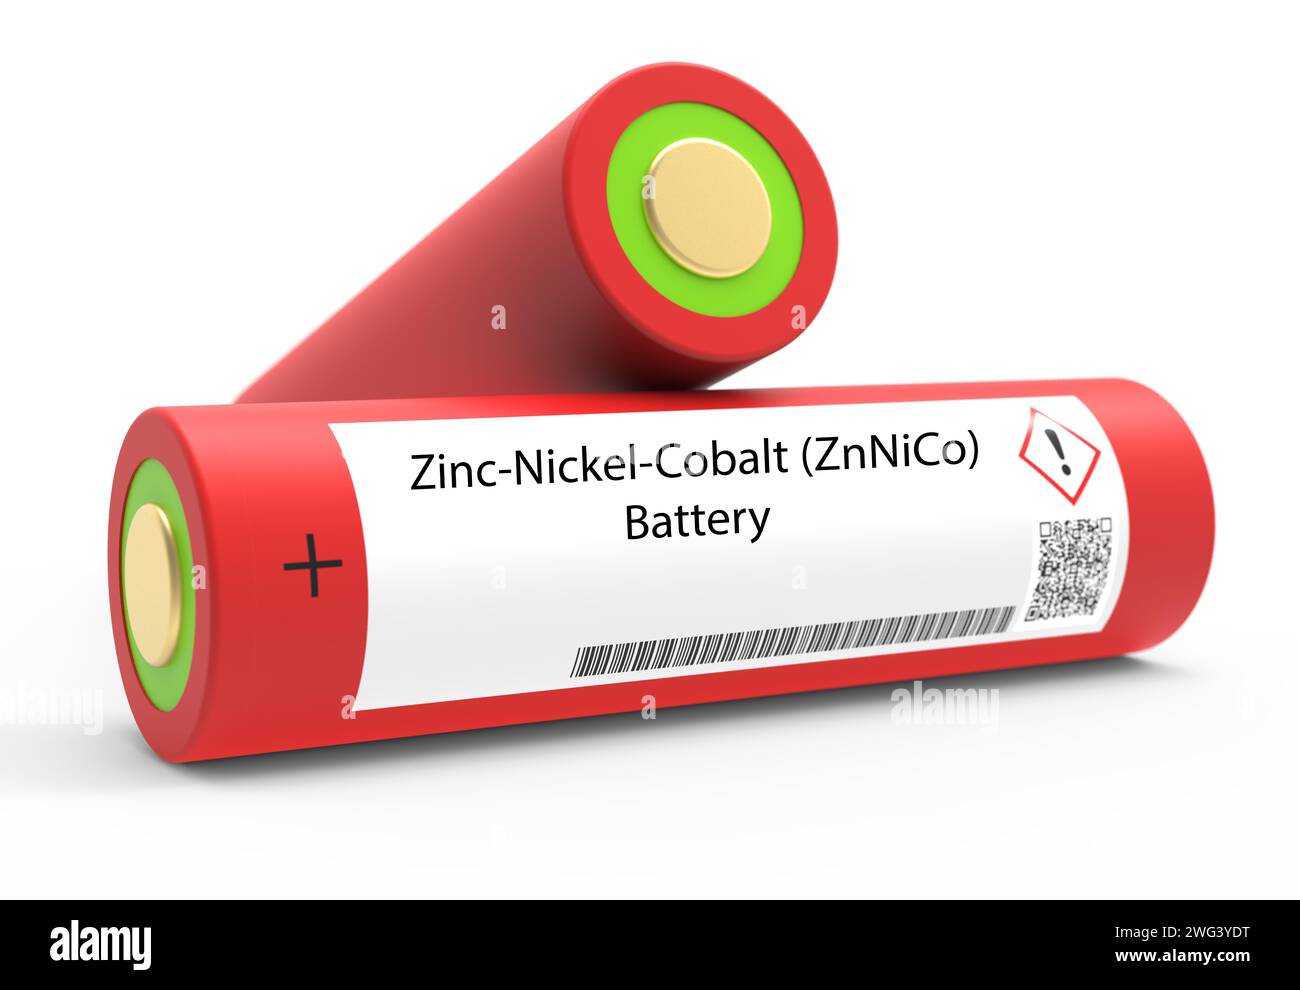 Zinc-nickel-cobalt battery Stock Photo